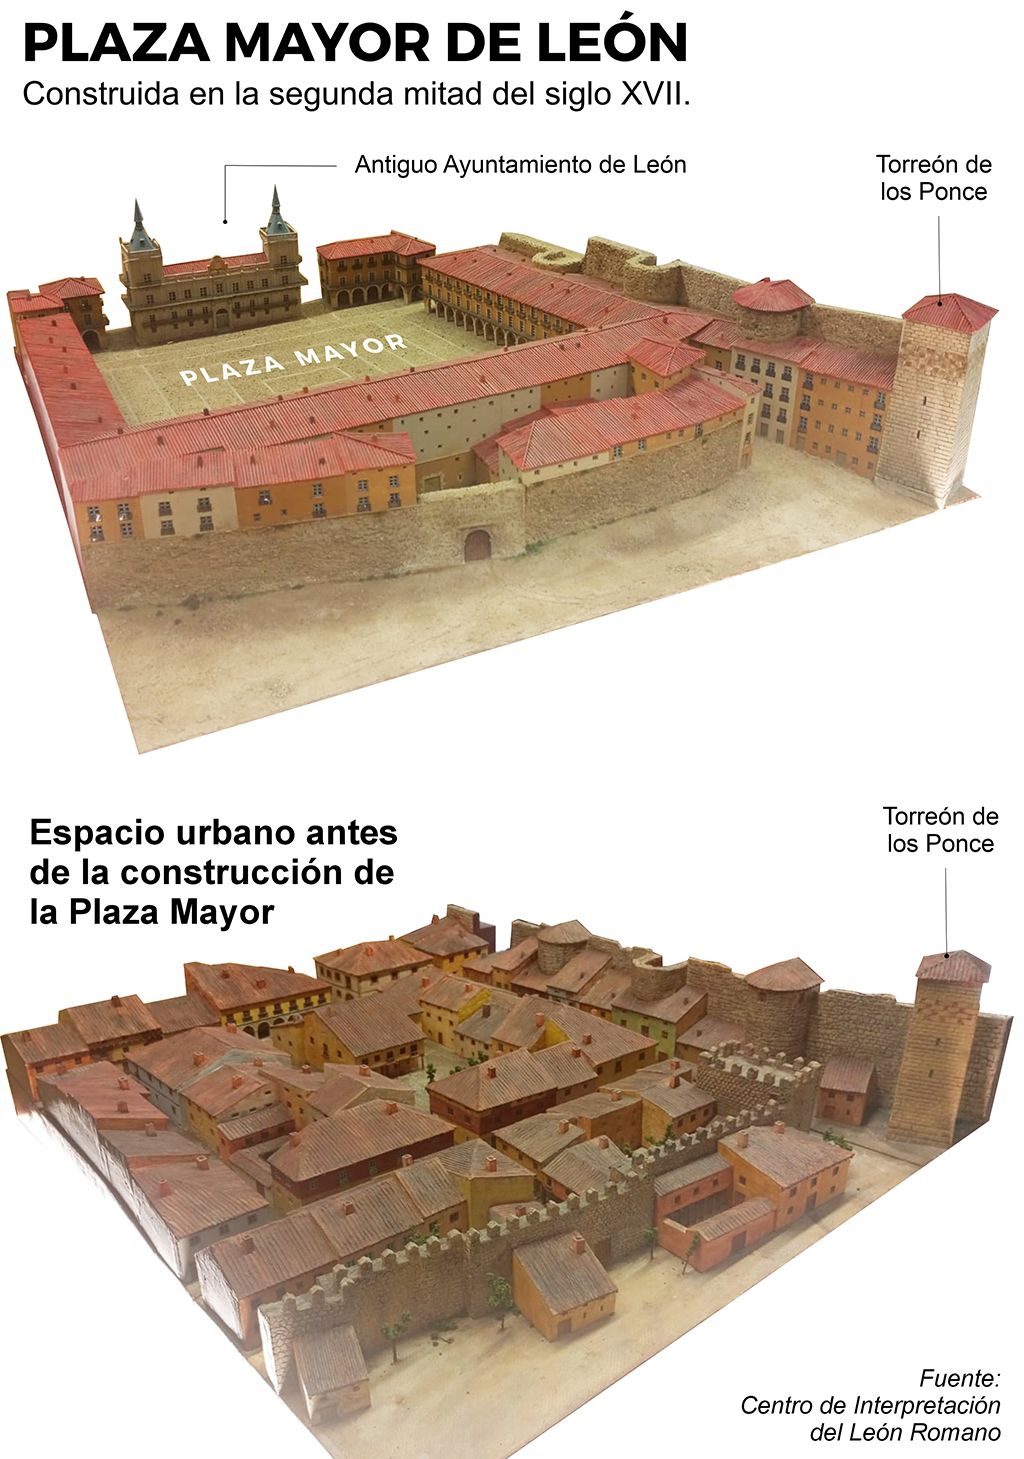 Distribución de la Plaza Mayor de León: El antes y después del espacio urbano